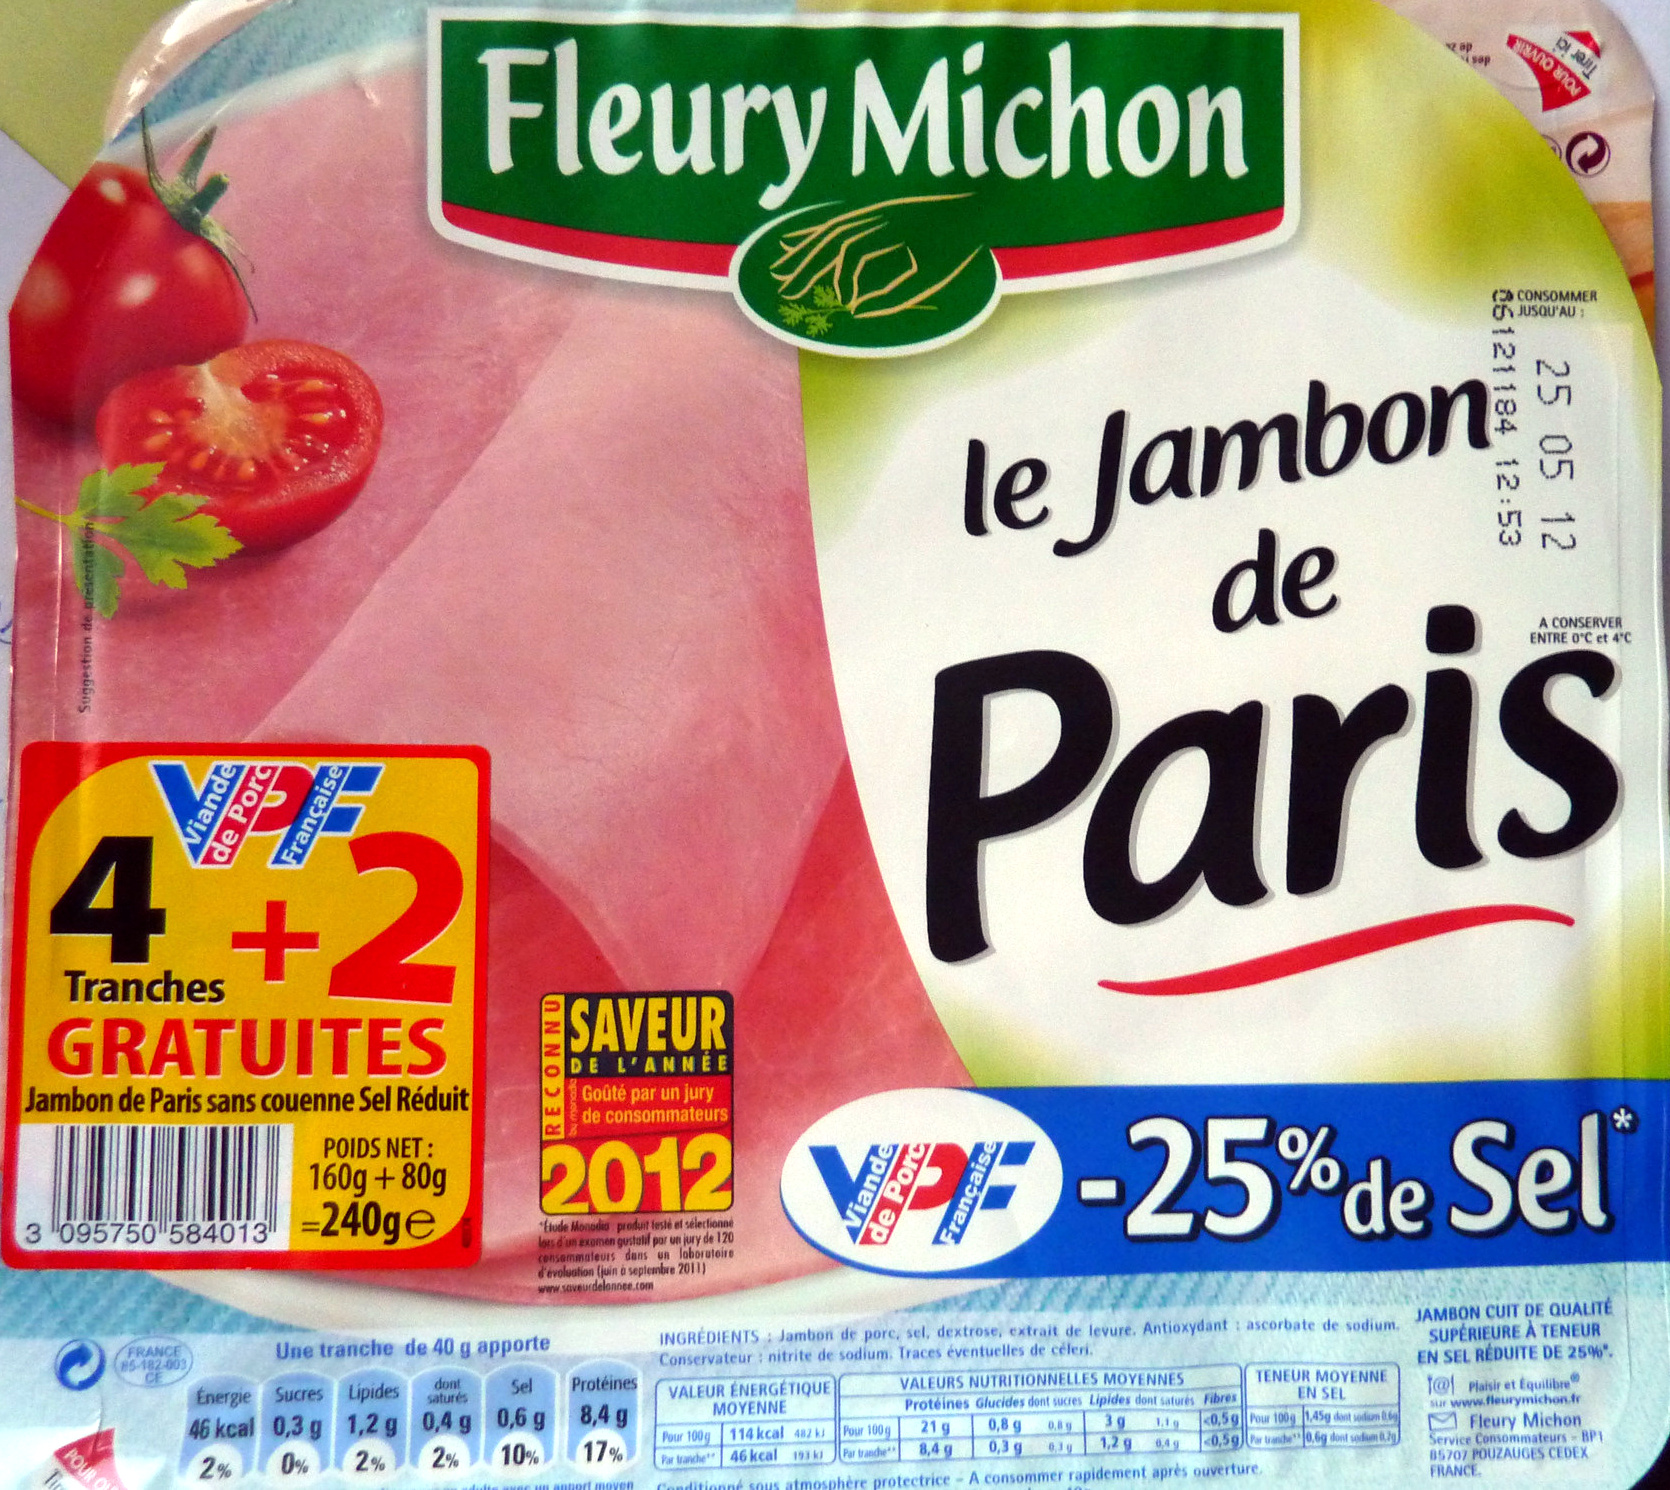 Le Jambon de Paris (- 25 % de Sel) 4 Tranches + 2 Gratuites - Product - fr